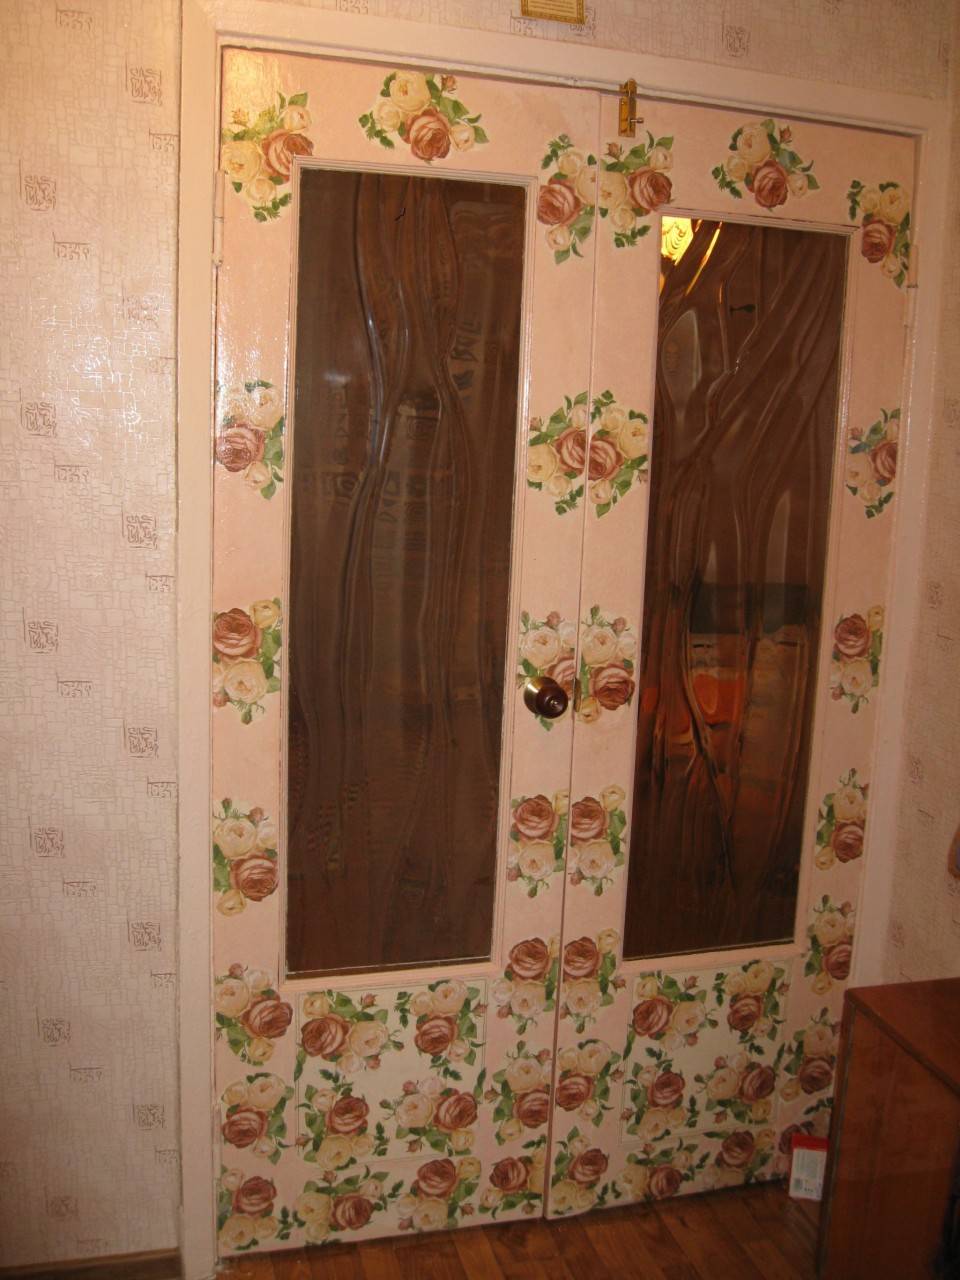 Декупаж дверей: фото своими руками, старая квартира, обои и салфетки, как сделать картинки для деревянной двери